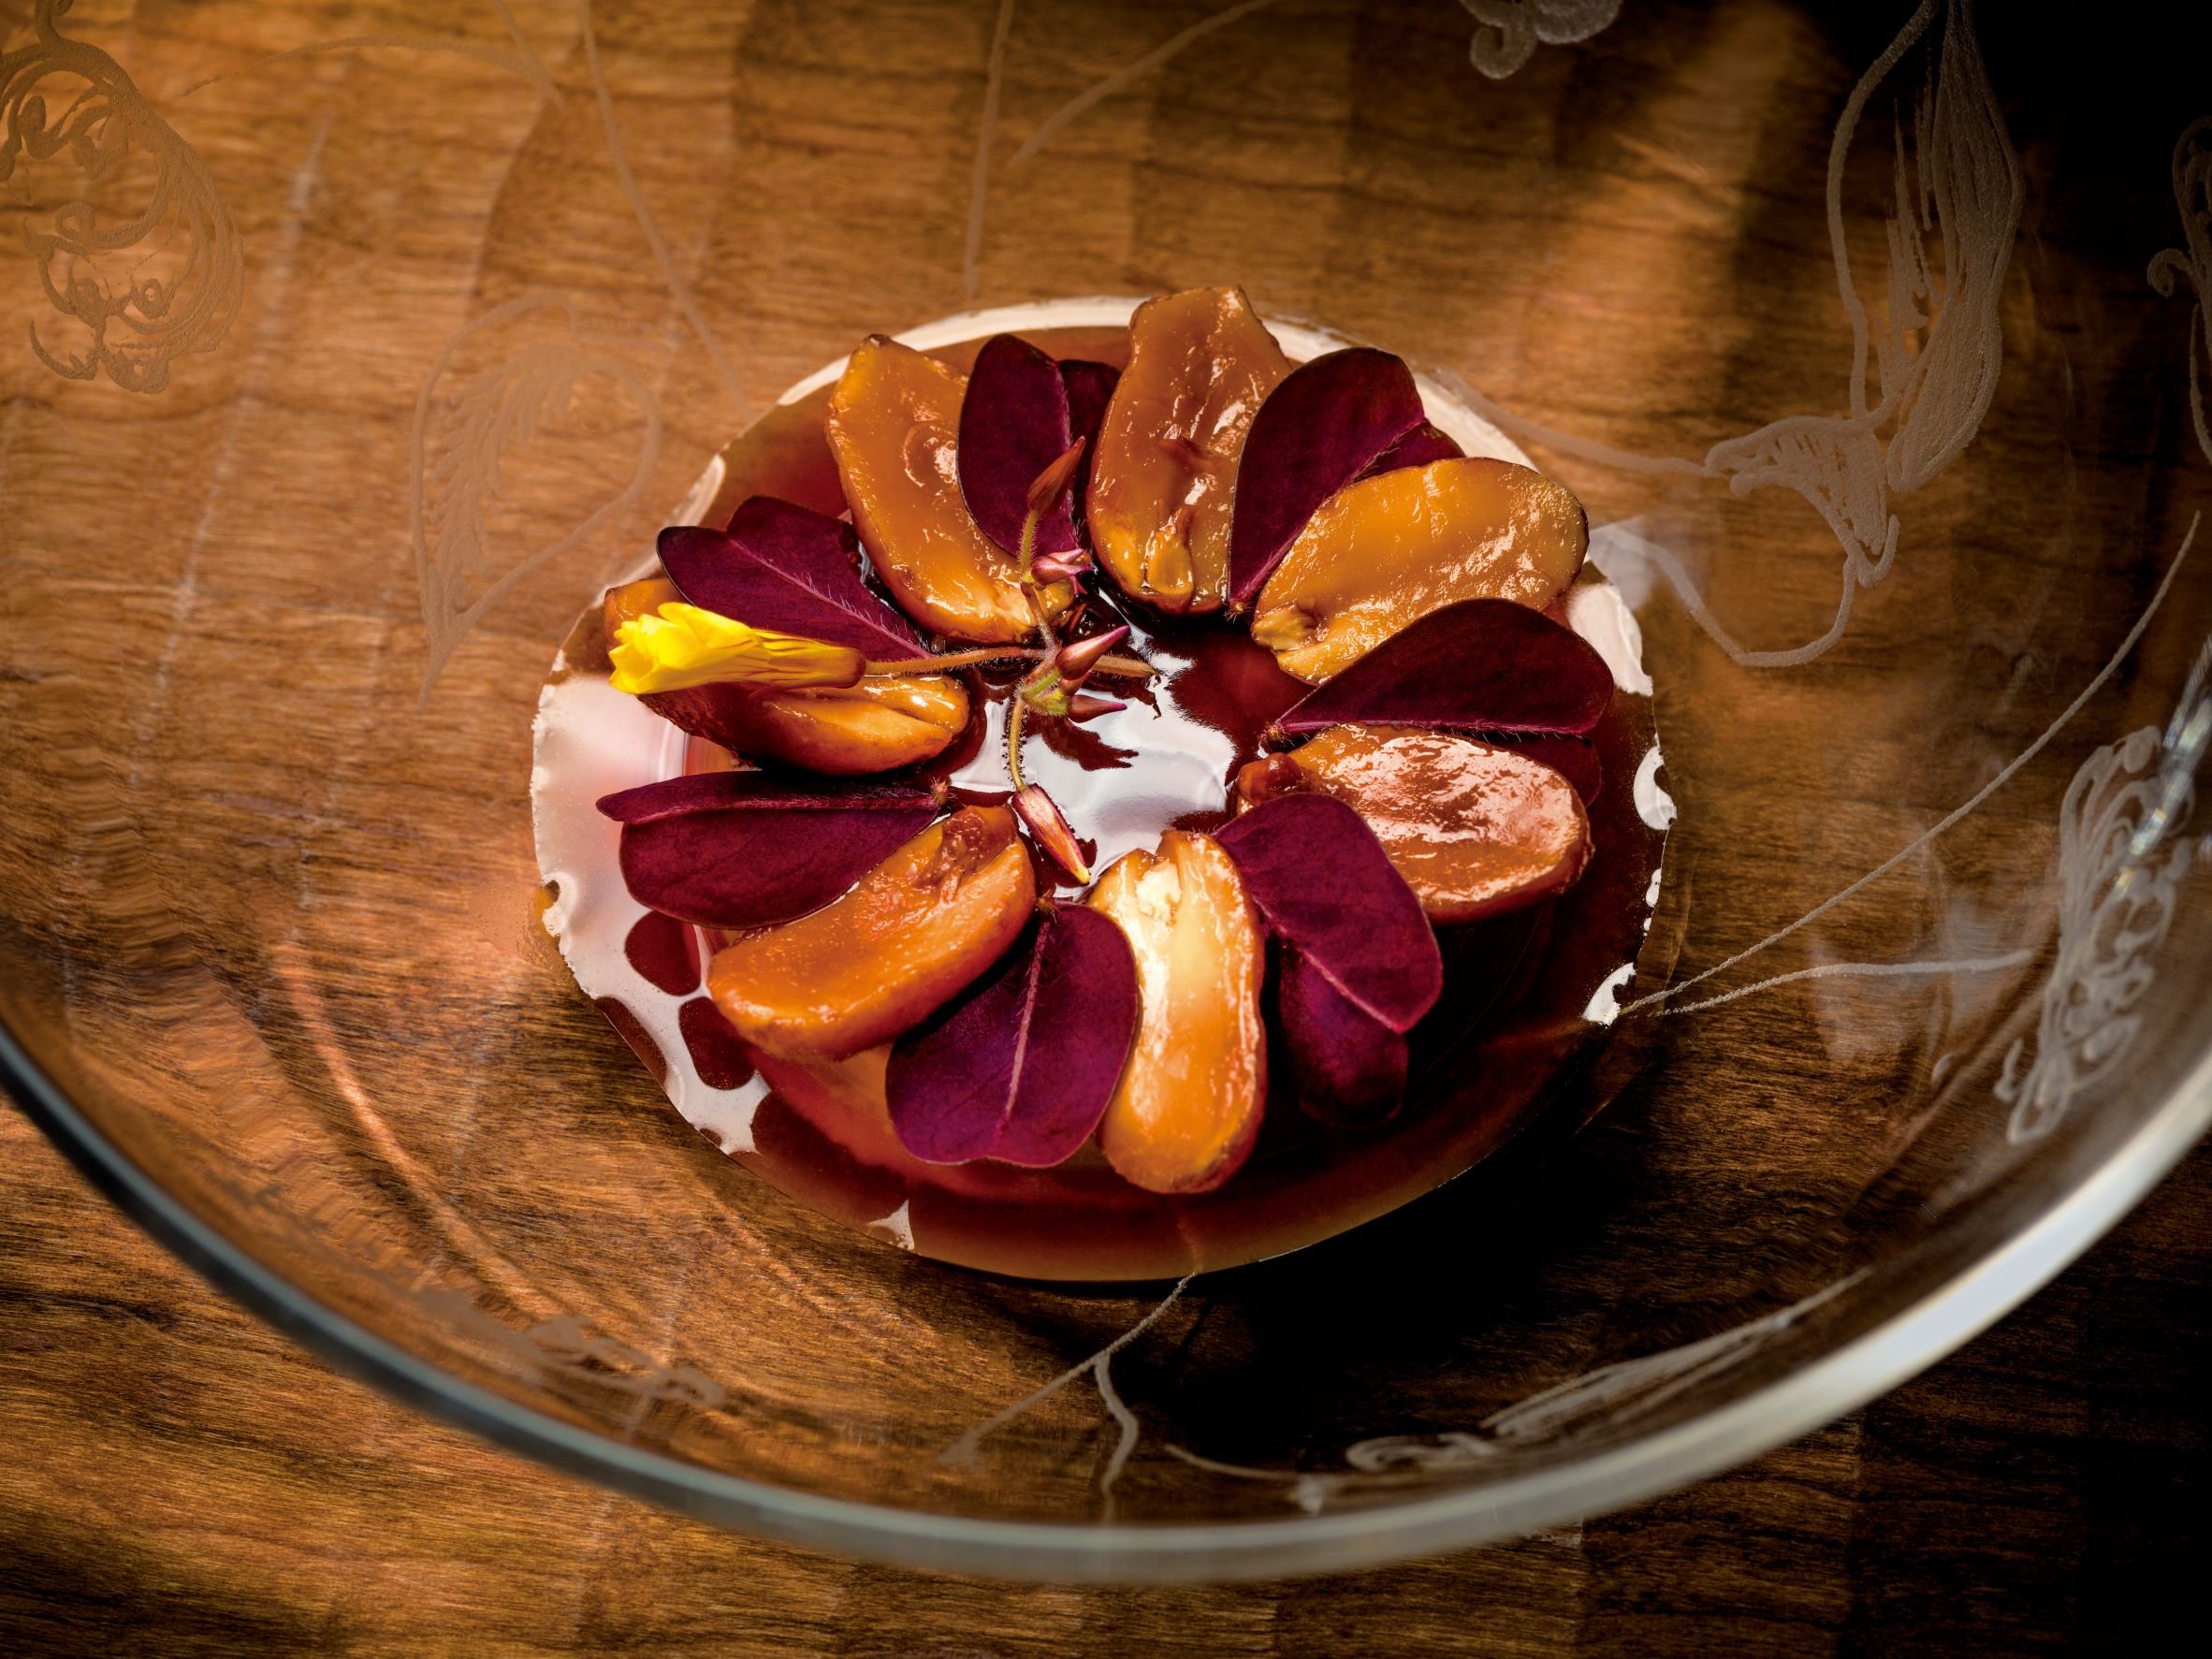 搭配糖漿、酢漿草的奶油焦糖鴨肝，是 Restaurant Frantzén 的甜點料理之一。